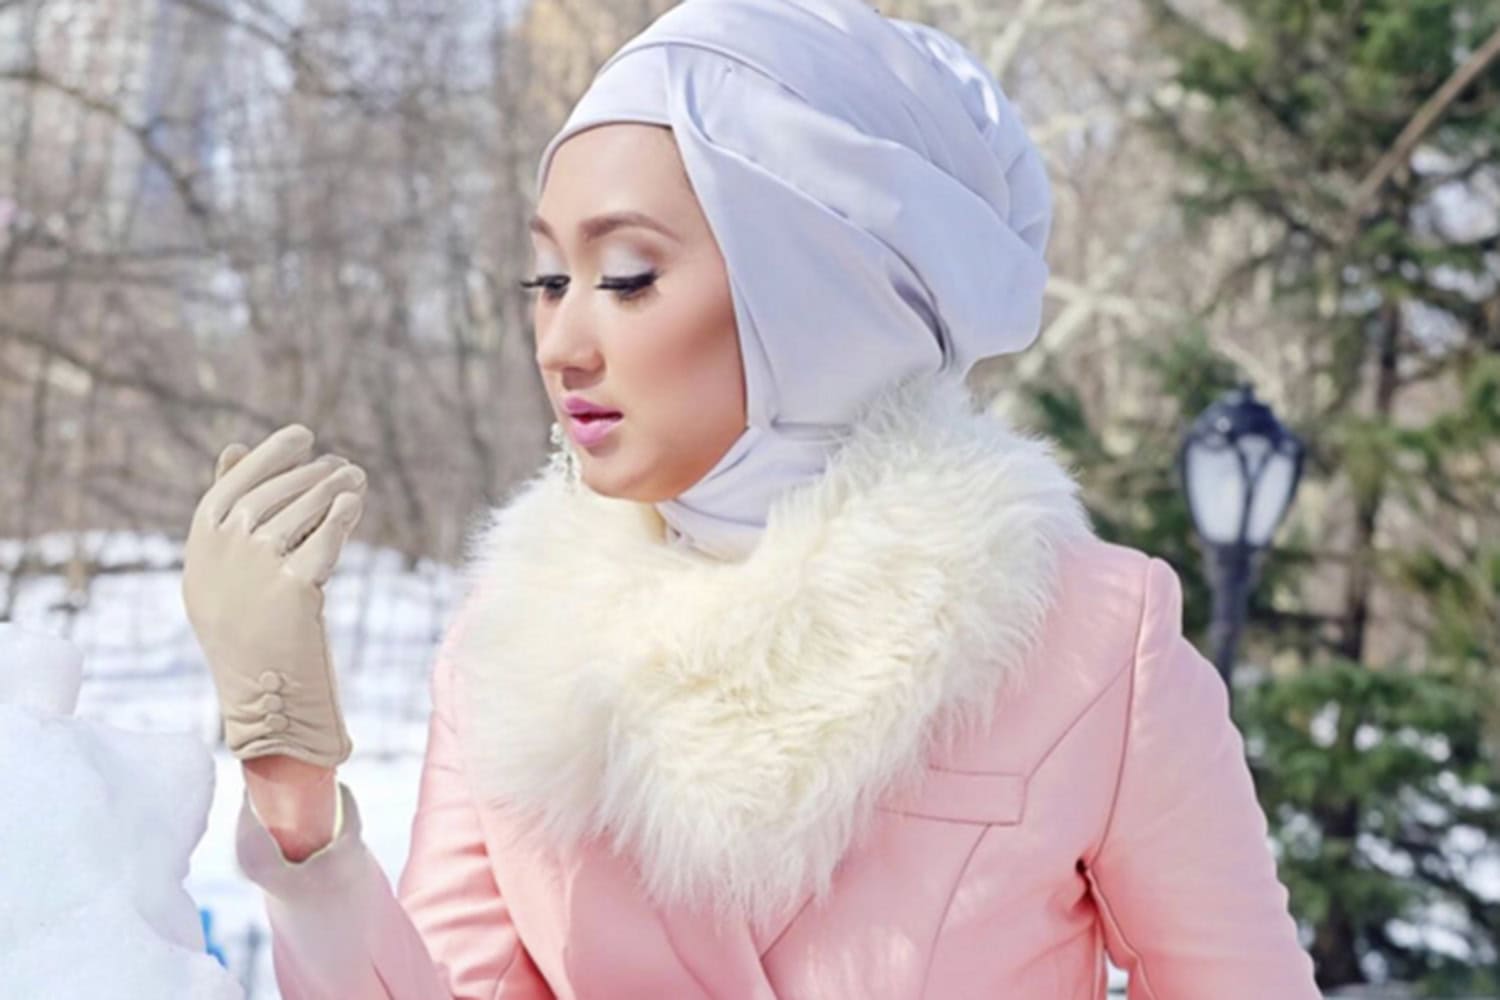 La eclosión de las islamgramers de moda